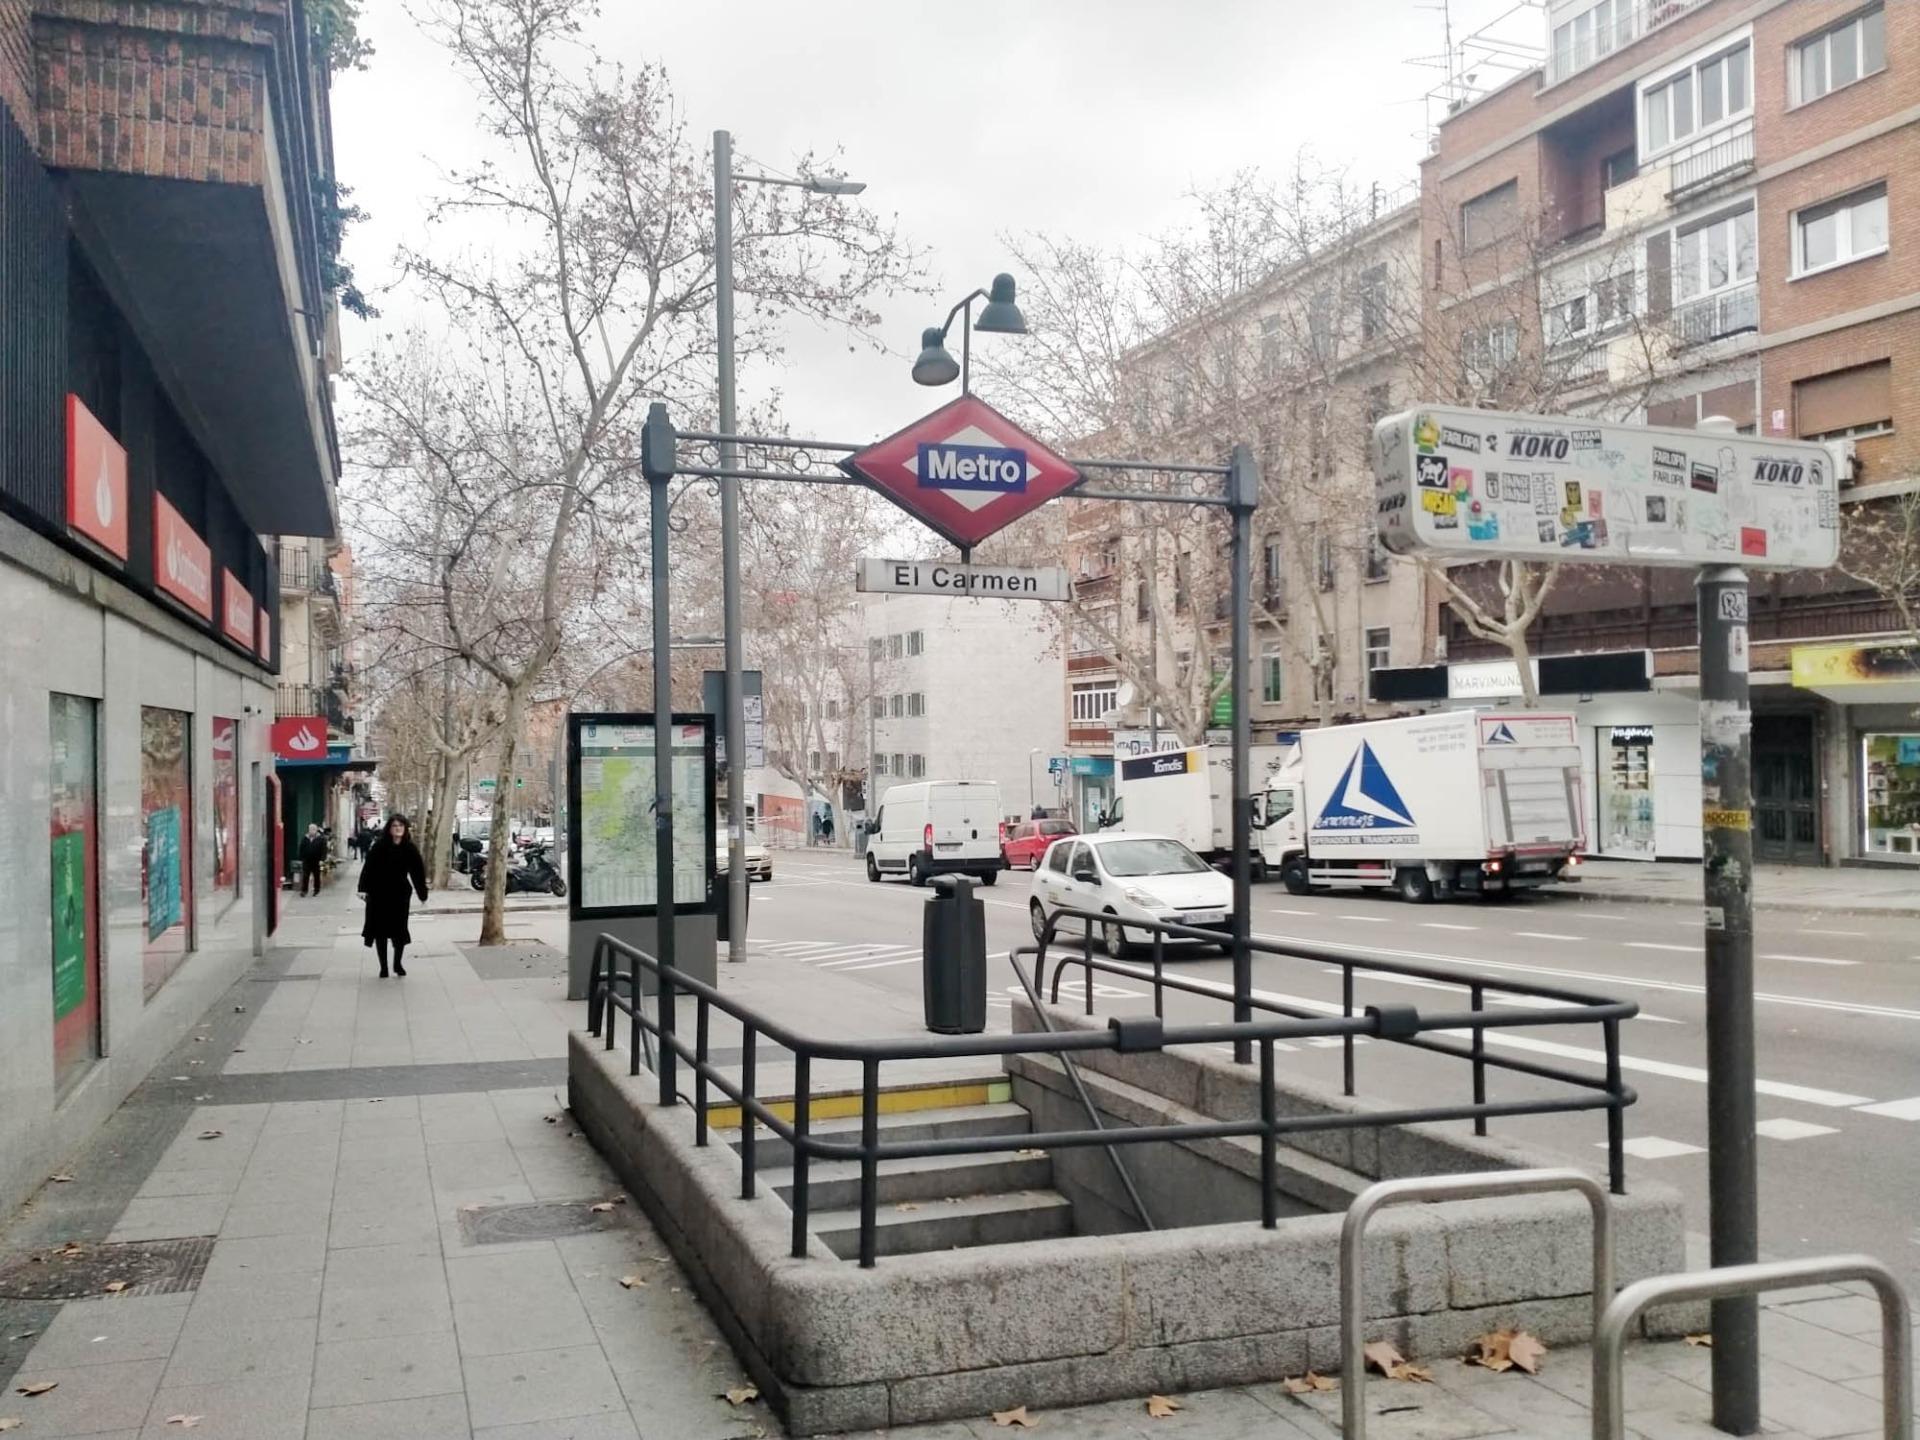 Inmueble en  la misma calle de Alcalá (Metro el Carmen)